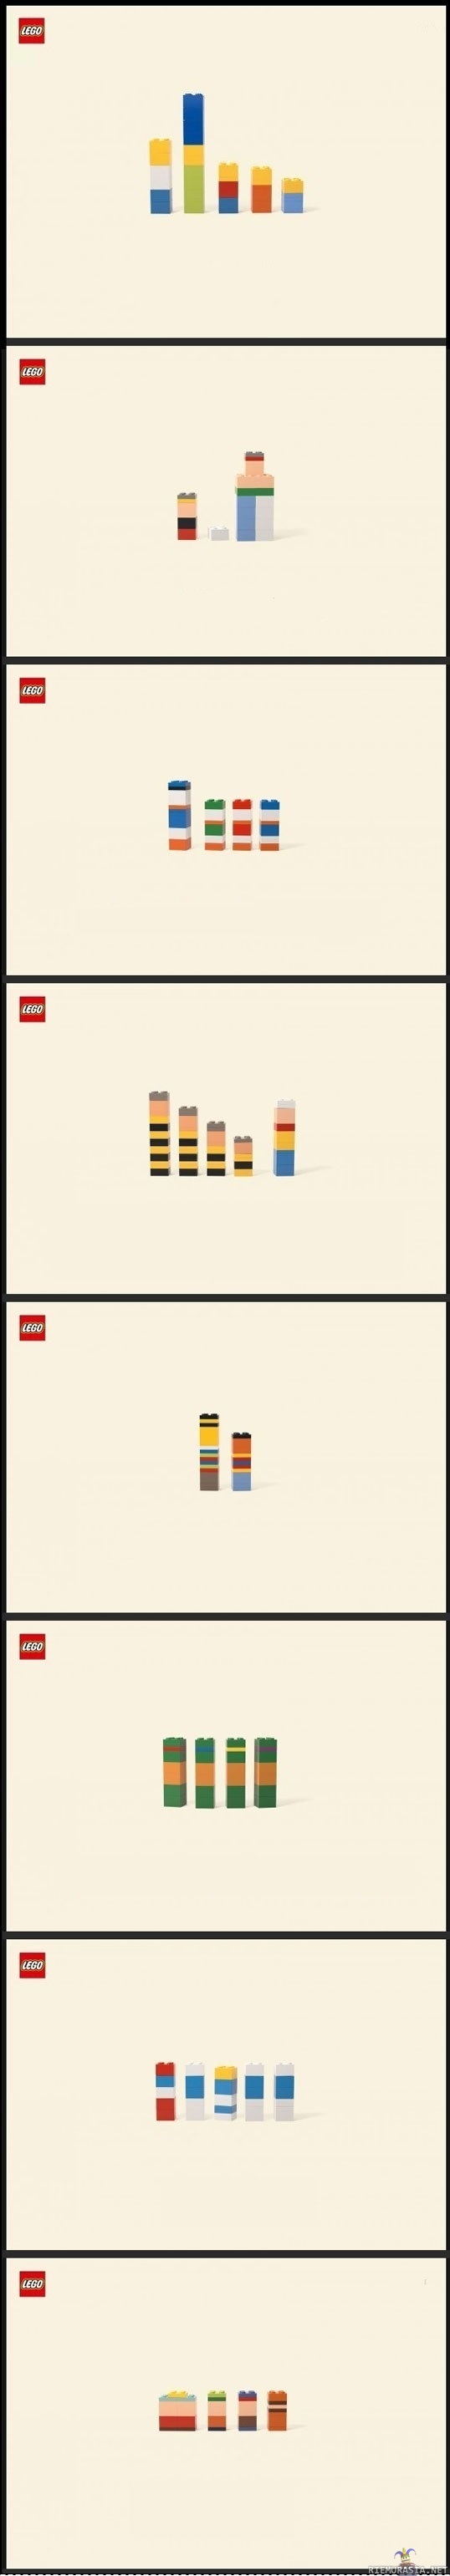 Legoja - Hahmot oikein arvanneelle 10 pistettä ja papukaija merkki.